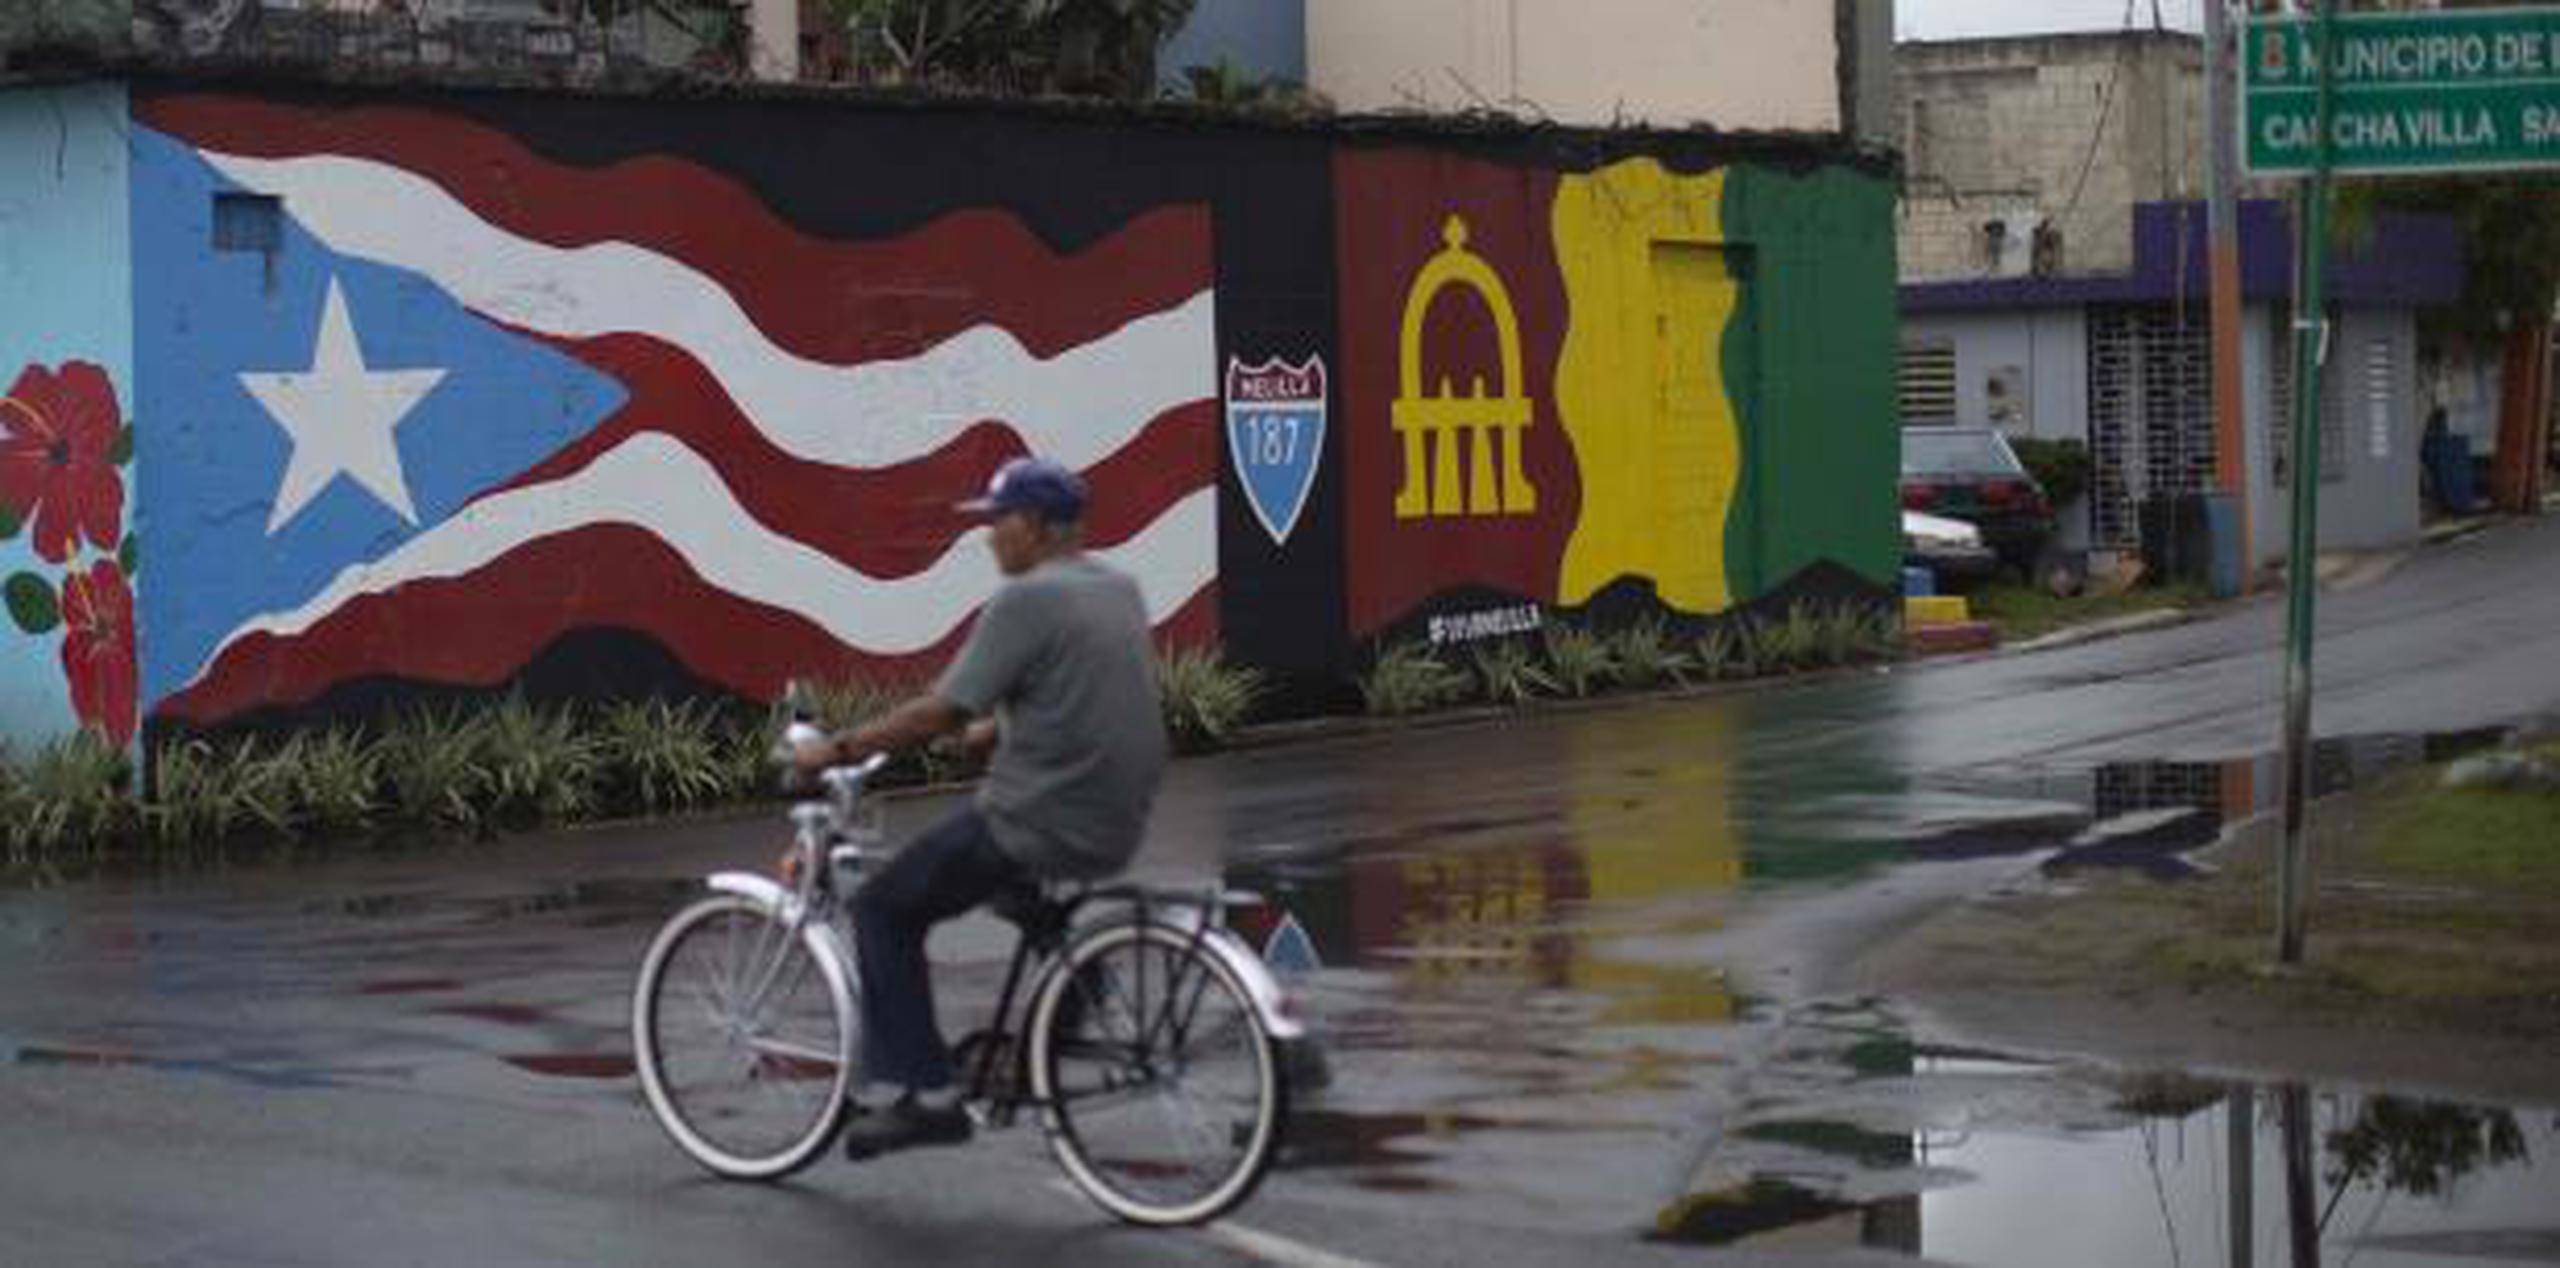 Un hombre corre su bicicleta sobre pavimento mojado. (Archivo)